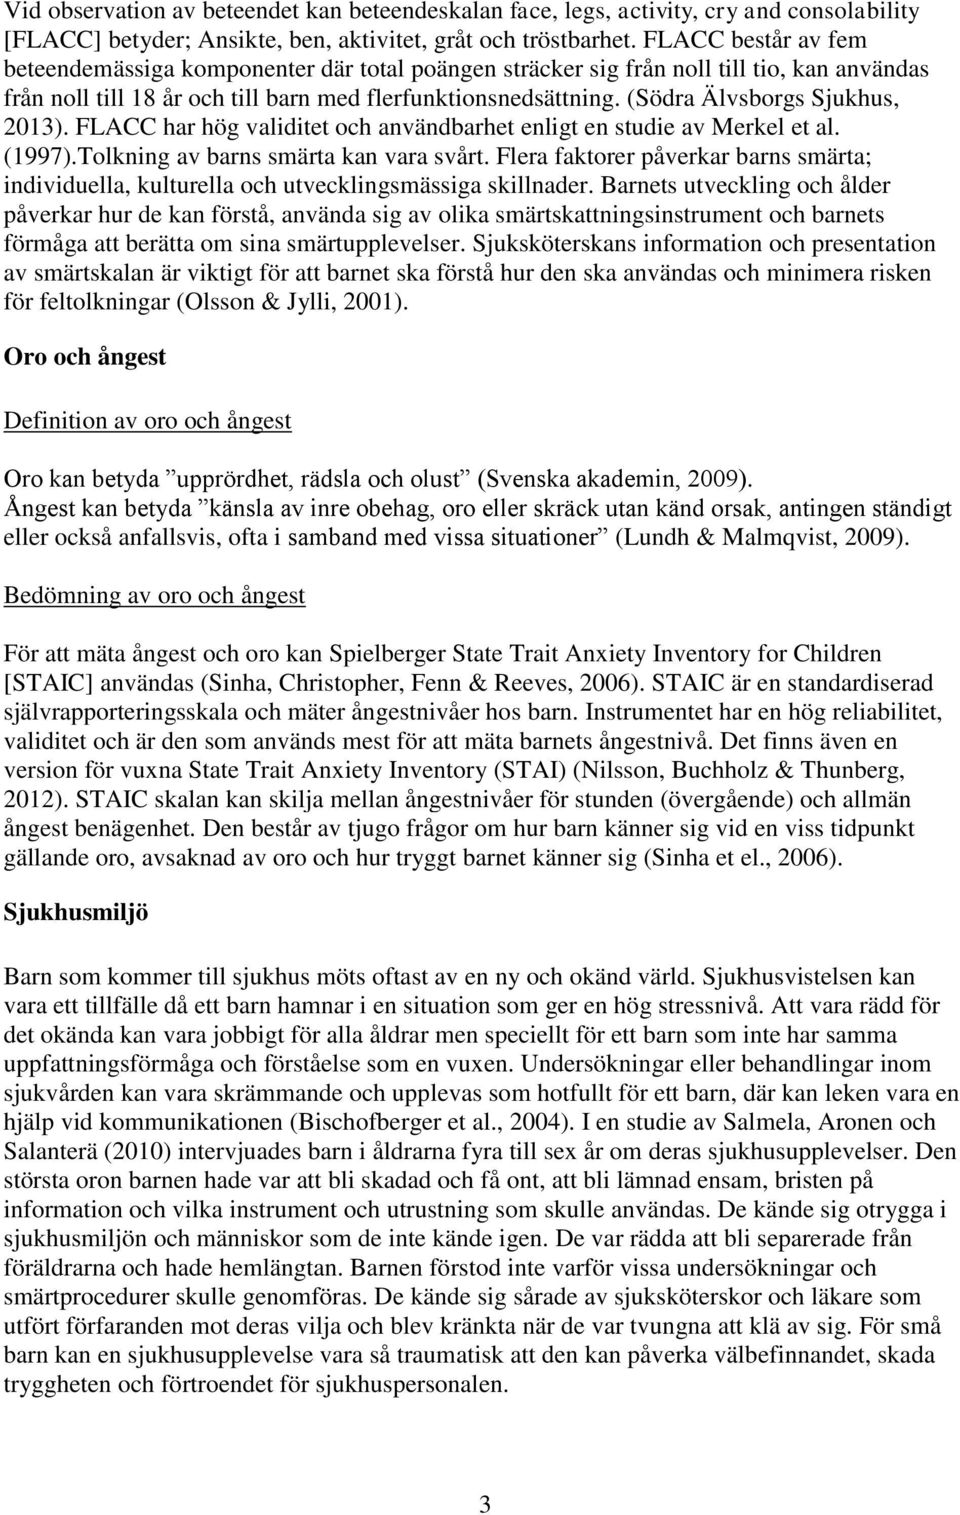 (Södra Älvsborgs Sjukhus, 2013). FLACC har hög validitet och användbarhet enligt en studie av Merkel et al. (1997).Tolkning av barns smärta kan vara svårt.